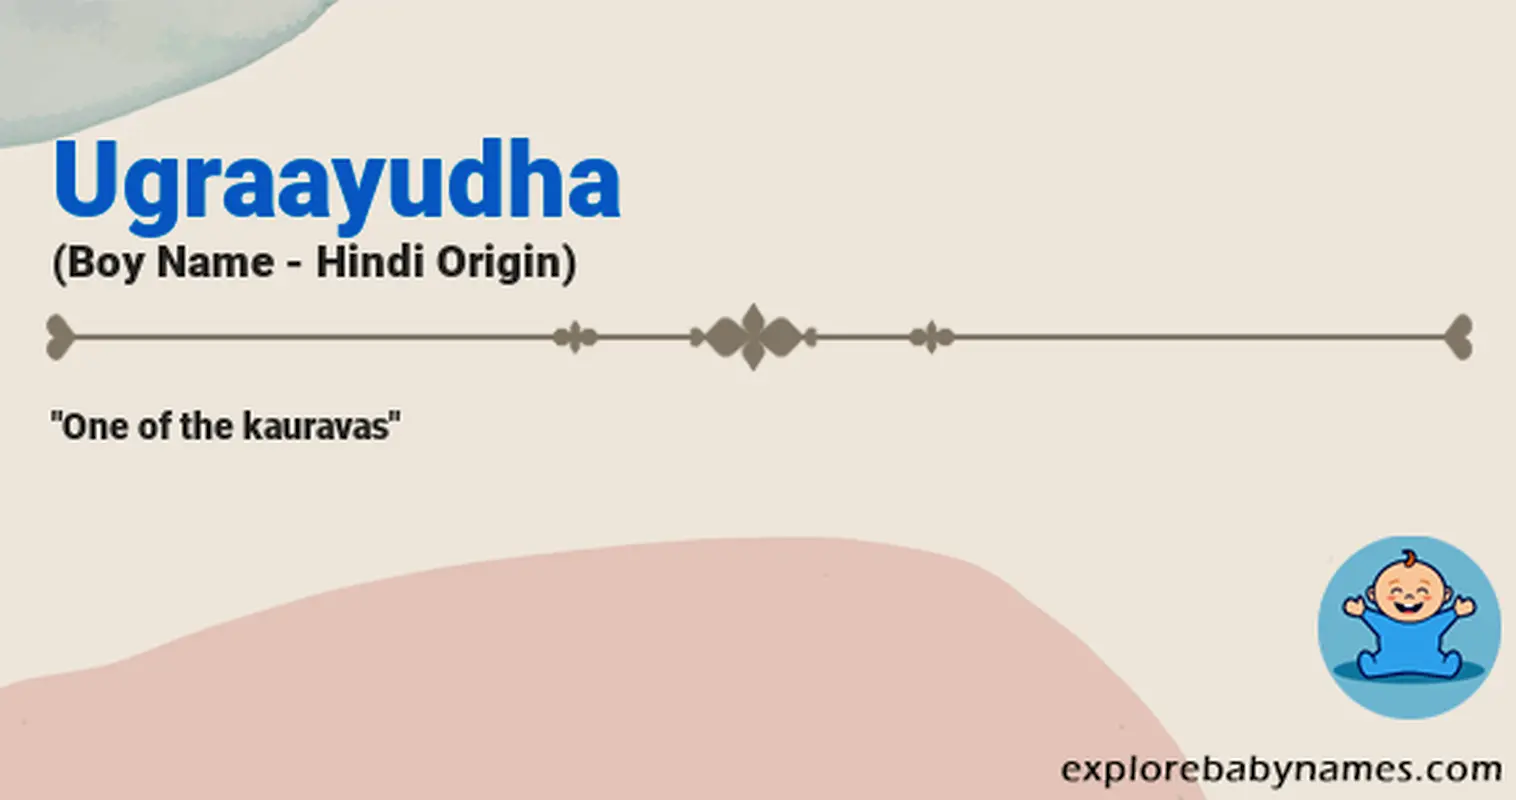 Meaning of Ugraayudha